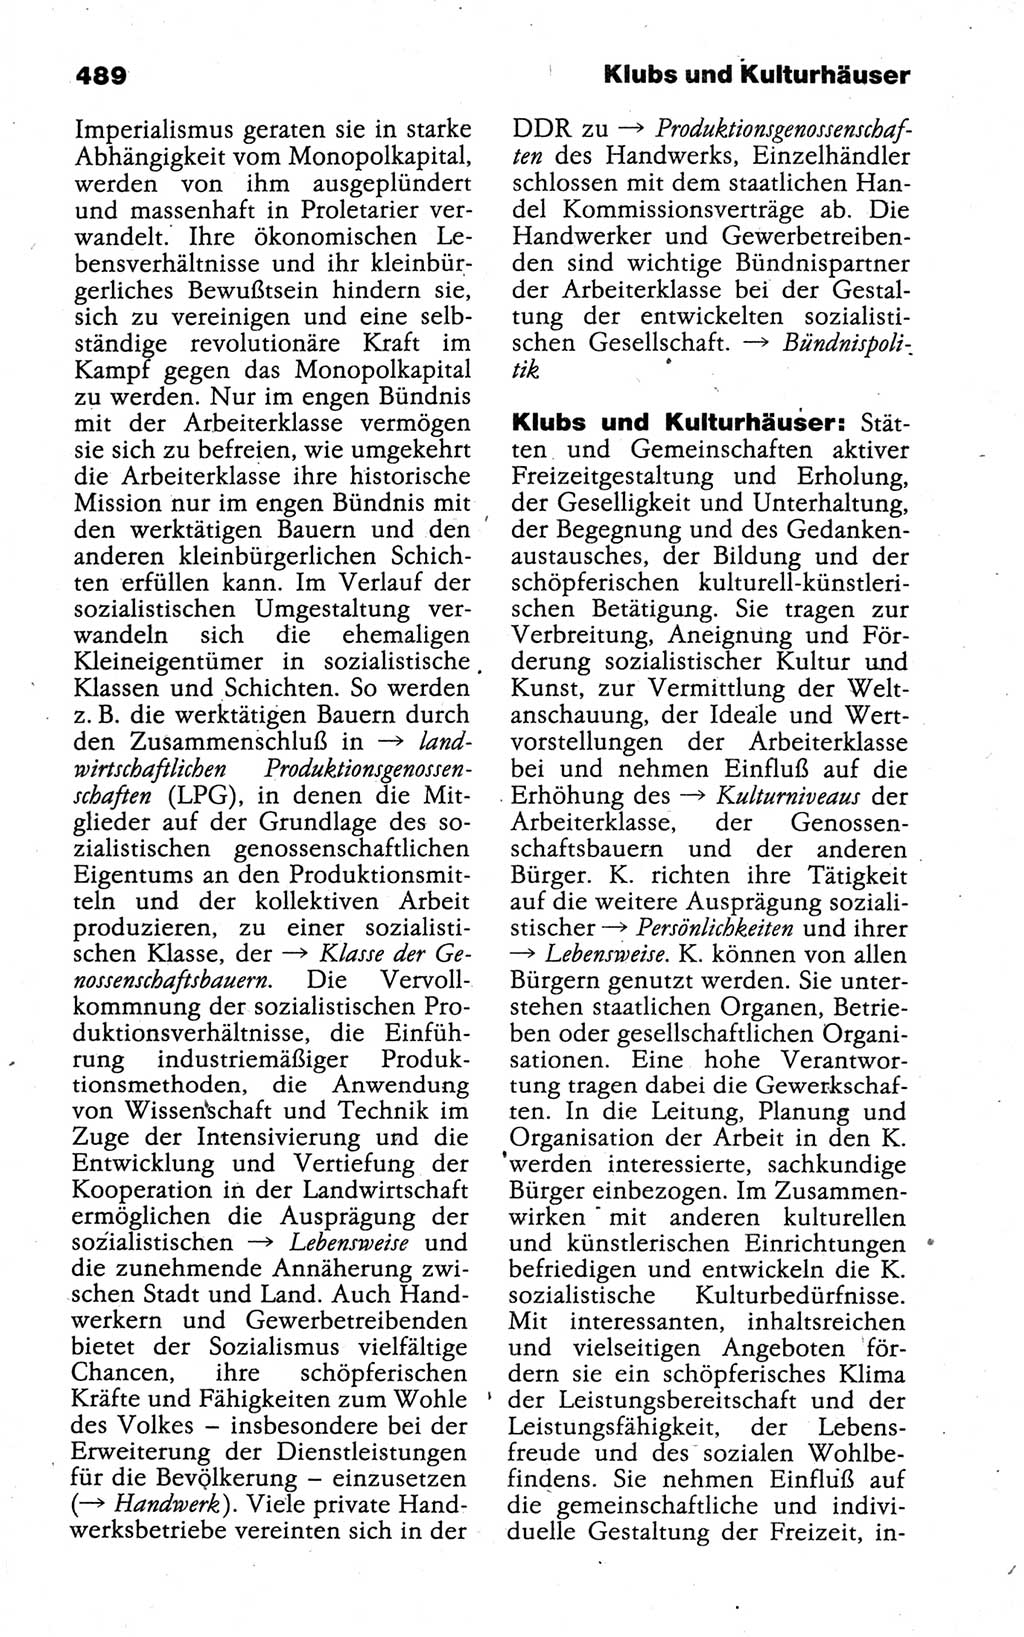 Kleines politisches Wörterbuch [Deutsche Demokratische Republik (DDR)] 1988, Seite 489 (Kl. pol. Wb. DDR 1988, S. 489)